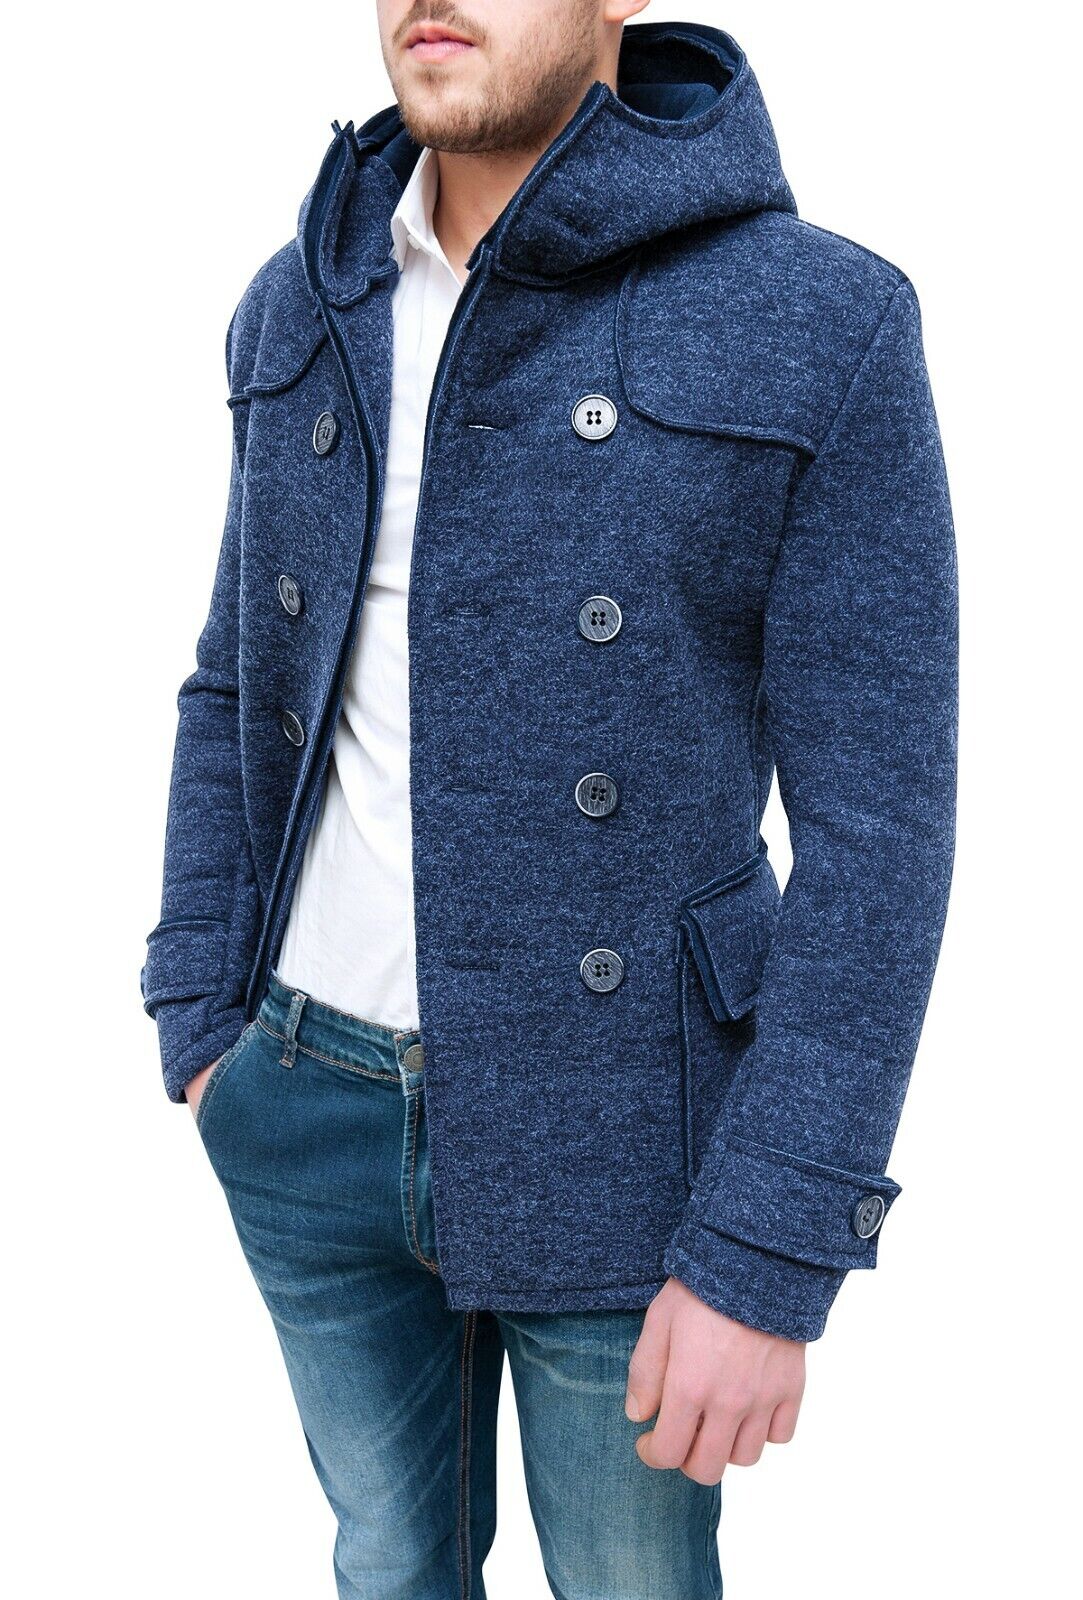 Cappotto giacca uomo casual blu invernale doppiopetto slim fit giubbino cardigan